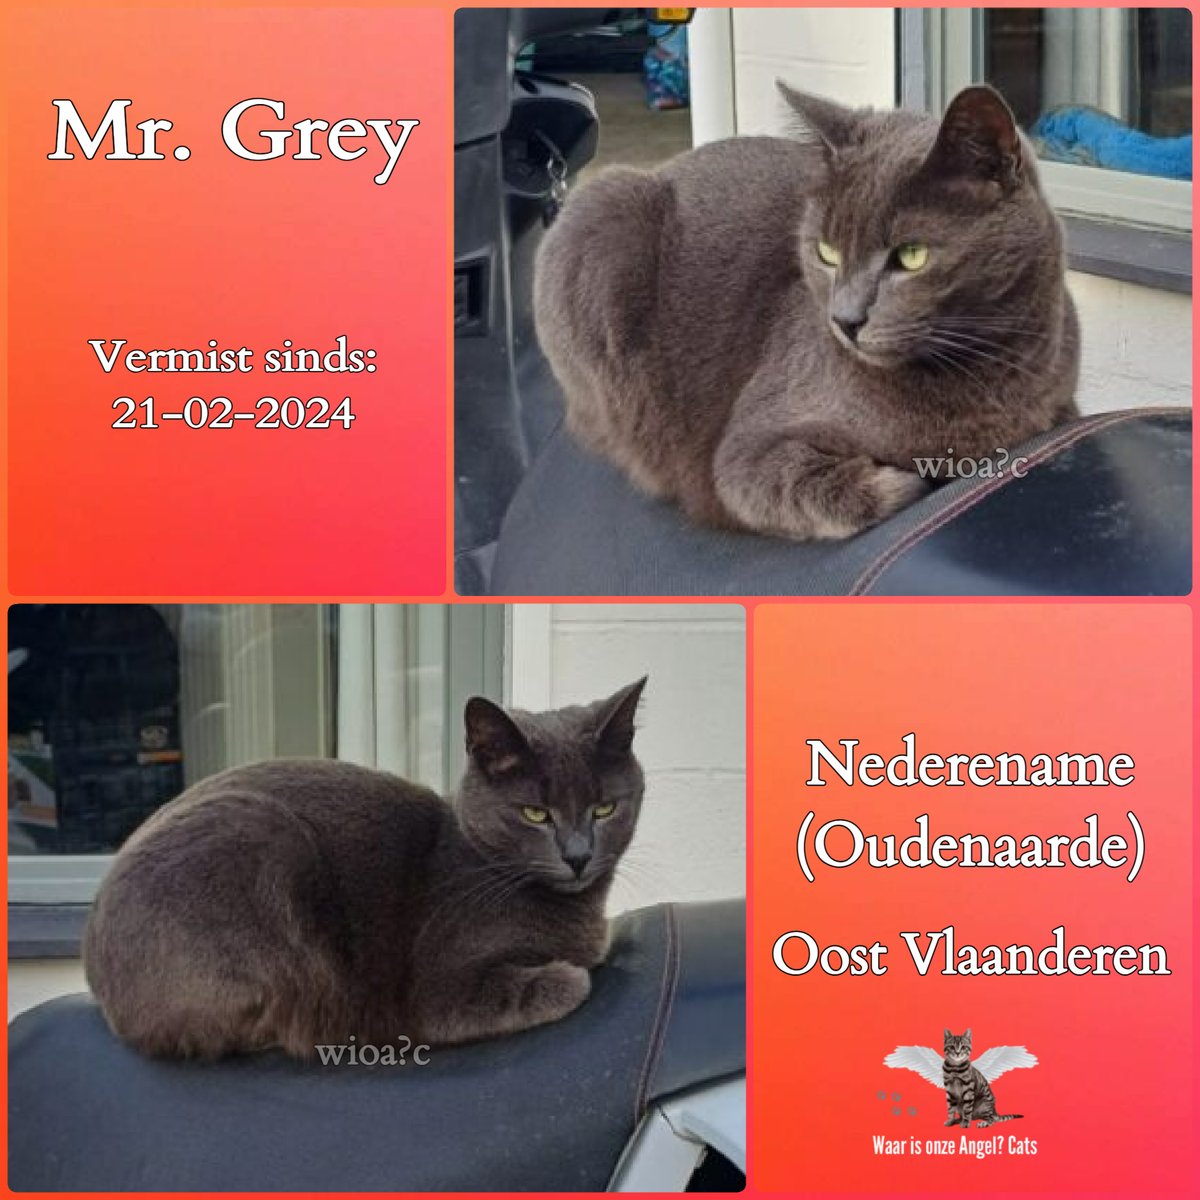 Mr Grey #Vermist sinds 21-02-2024 te #Nederename #Oudenaarde #OostVlaanderen #België 

facebook.com/photo/?fbid=72…